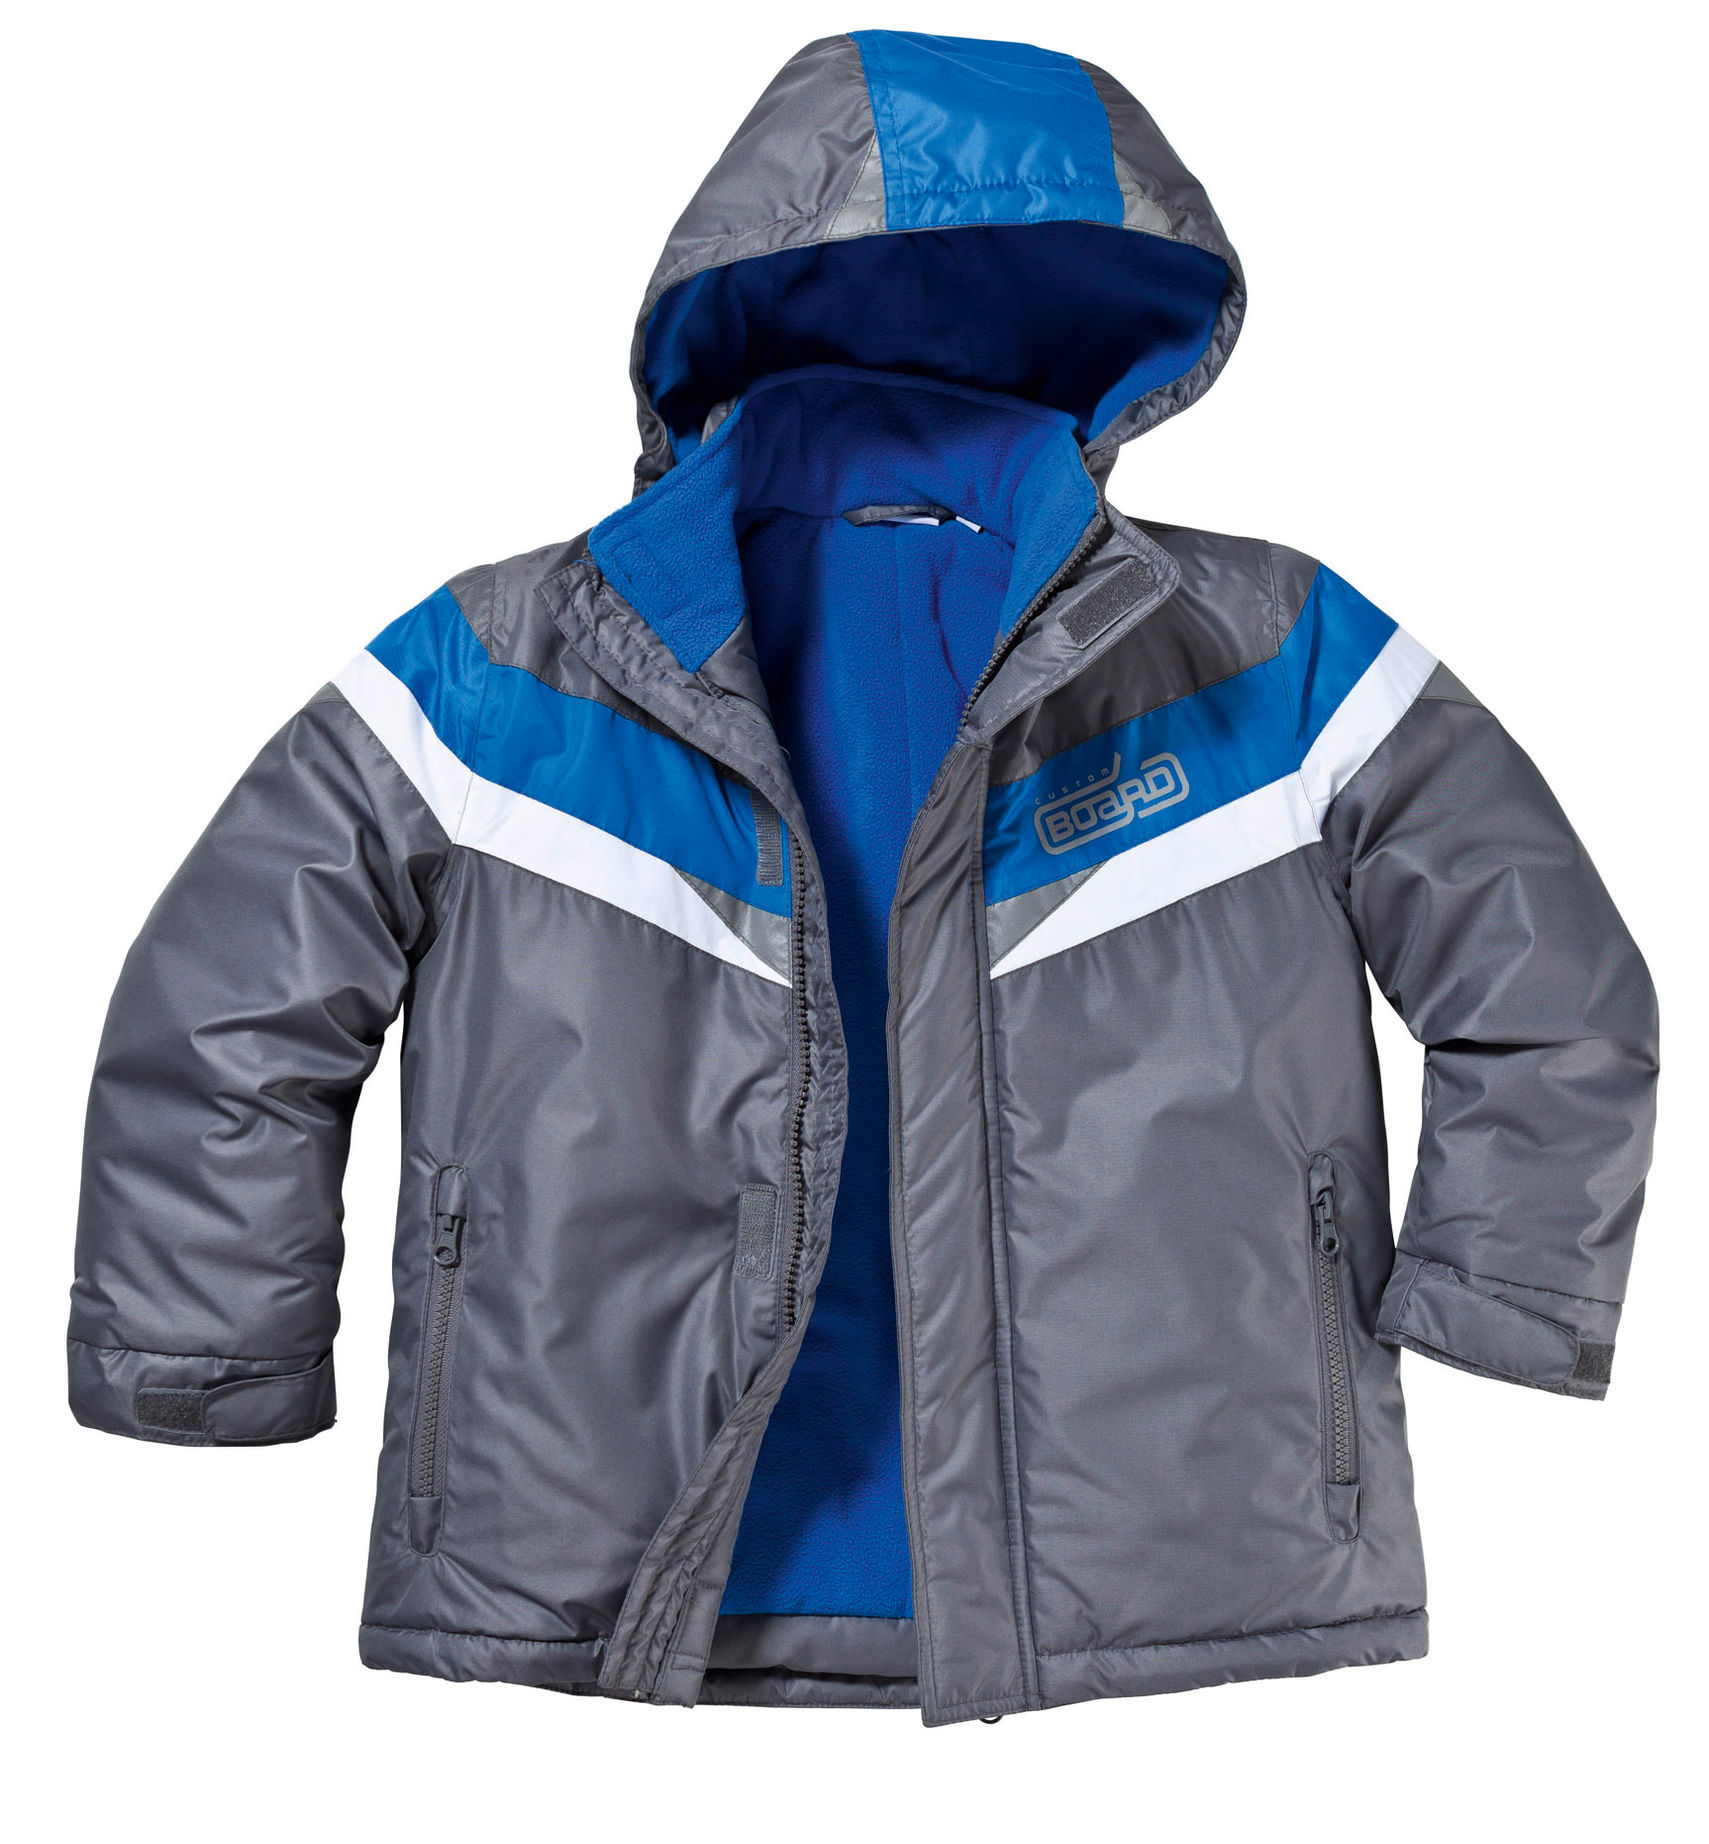 Ski-Jacke für Jungen, anthrazit-blau Größe: 146 152 | Weltbild.de